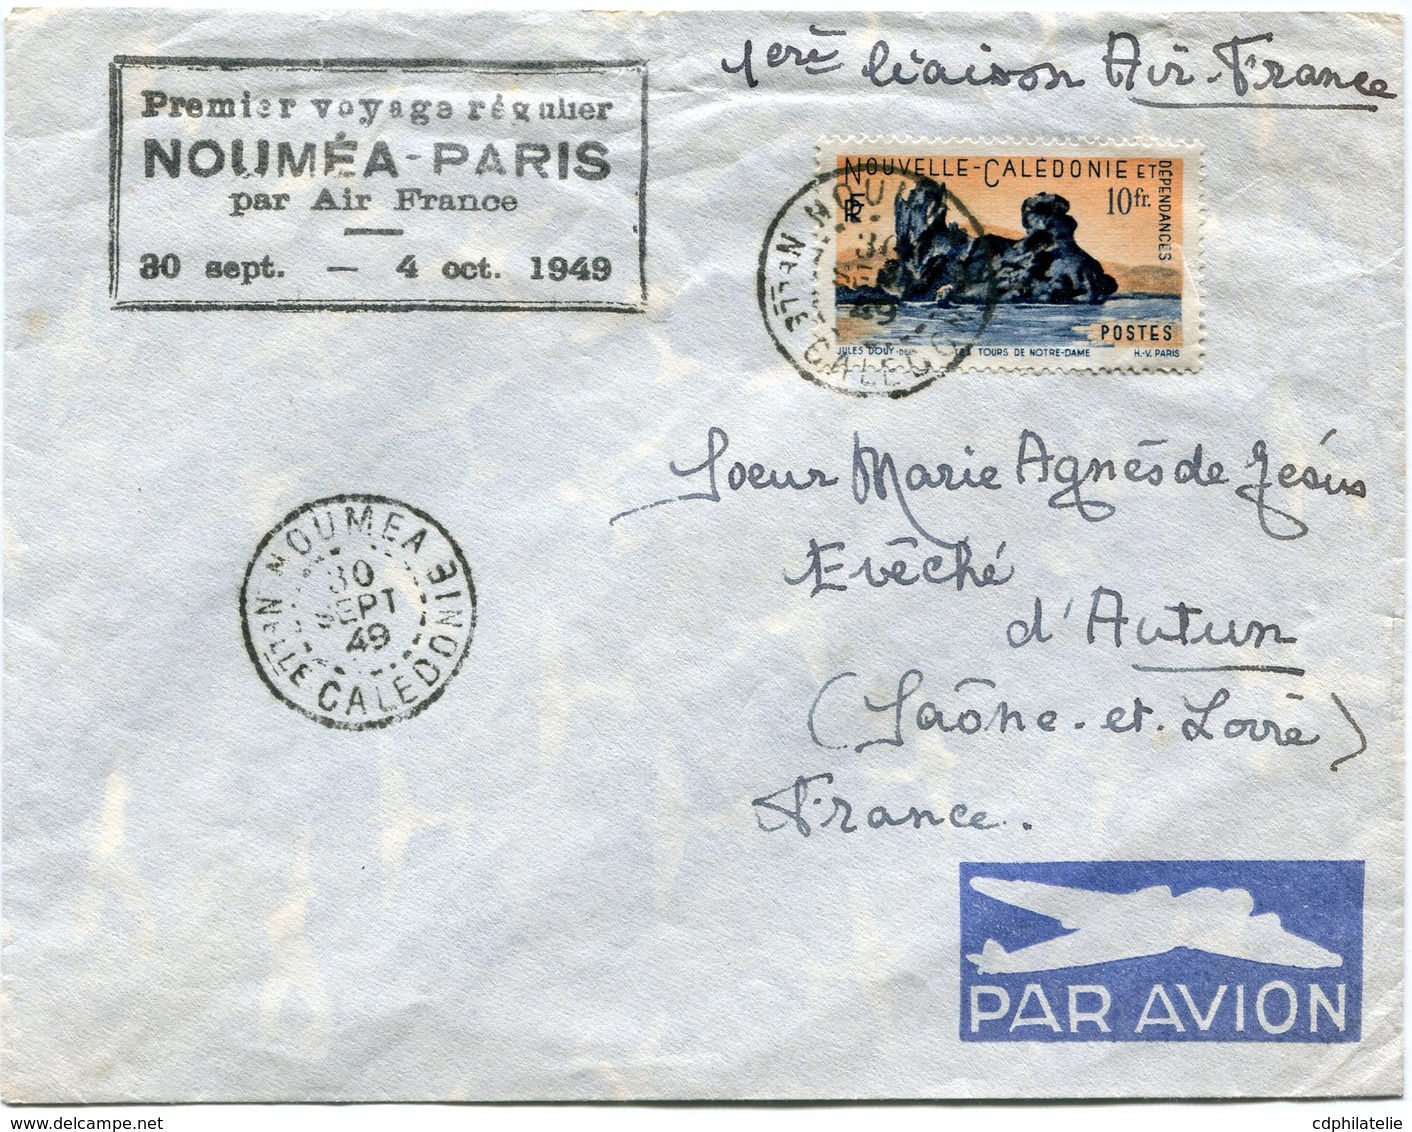 NOUVELLE-CALEDONIE LETTRE PAR AVION AVEC CACHET "PREMIER VOYAGE REGULIER NOUMEA-PARIS PAR AIR FRANCE 30 SEPT-4 OCT 1949" - Covers & Documents